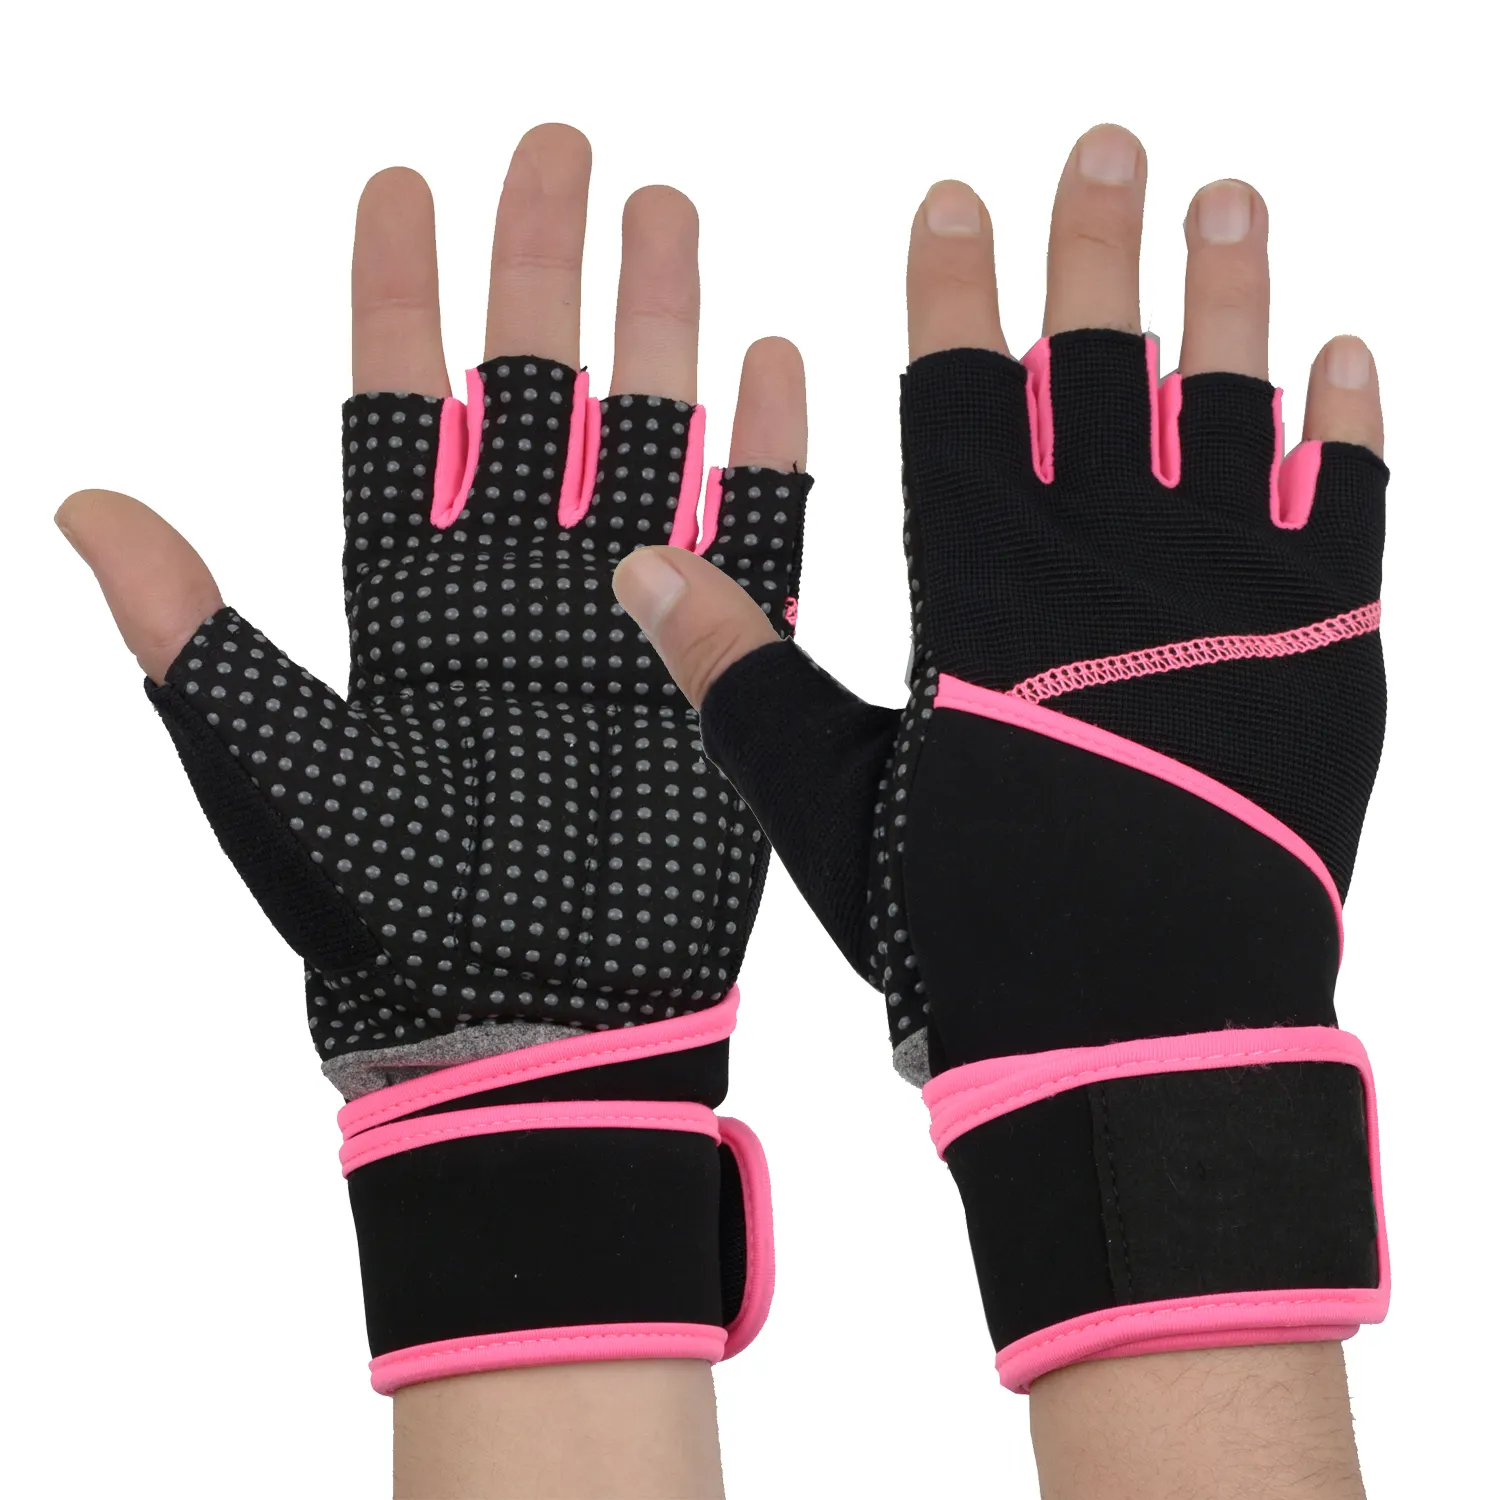 Mains libres soutien des poignets, gants de sport pour la pratique d'entraînement, musculation, poids au poignet